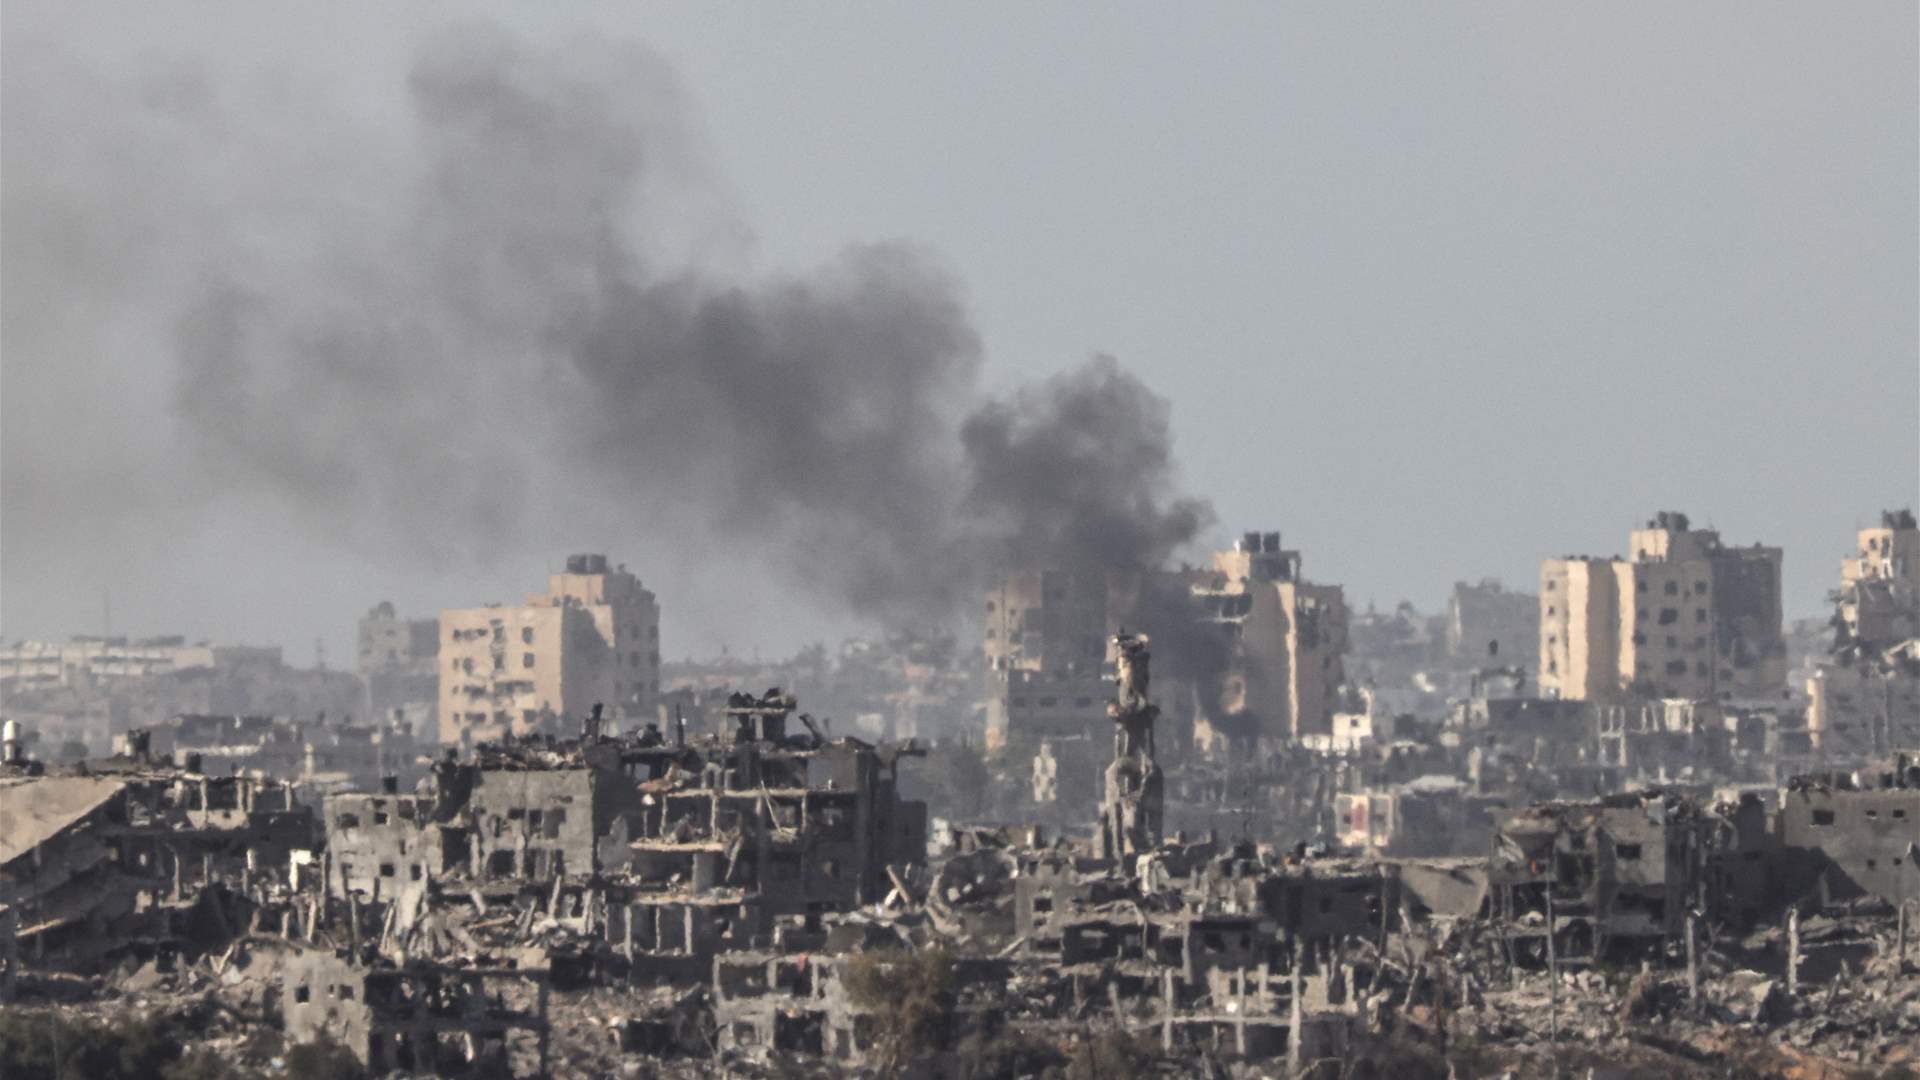 كم بلغ عدد القتلى في قطاع غزة جراء القصف الاسرائيلي؟